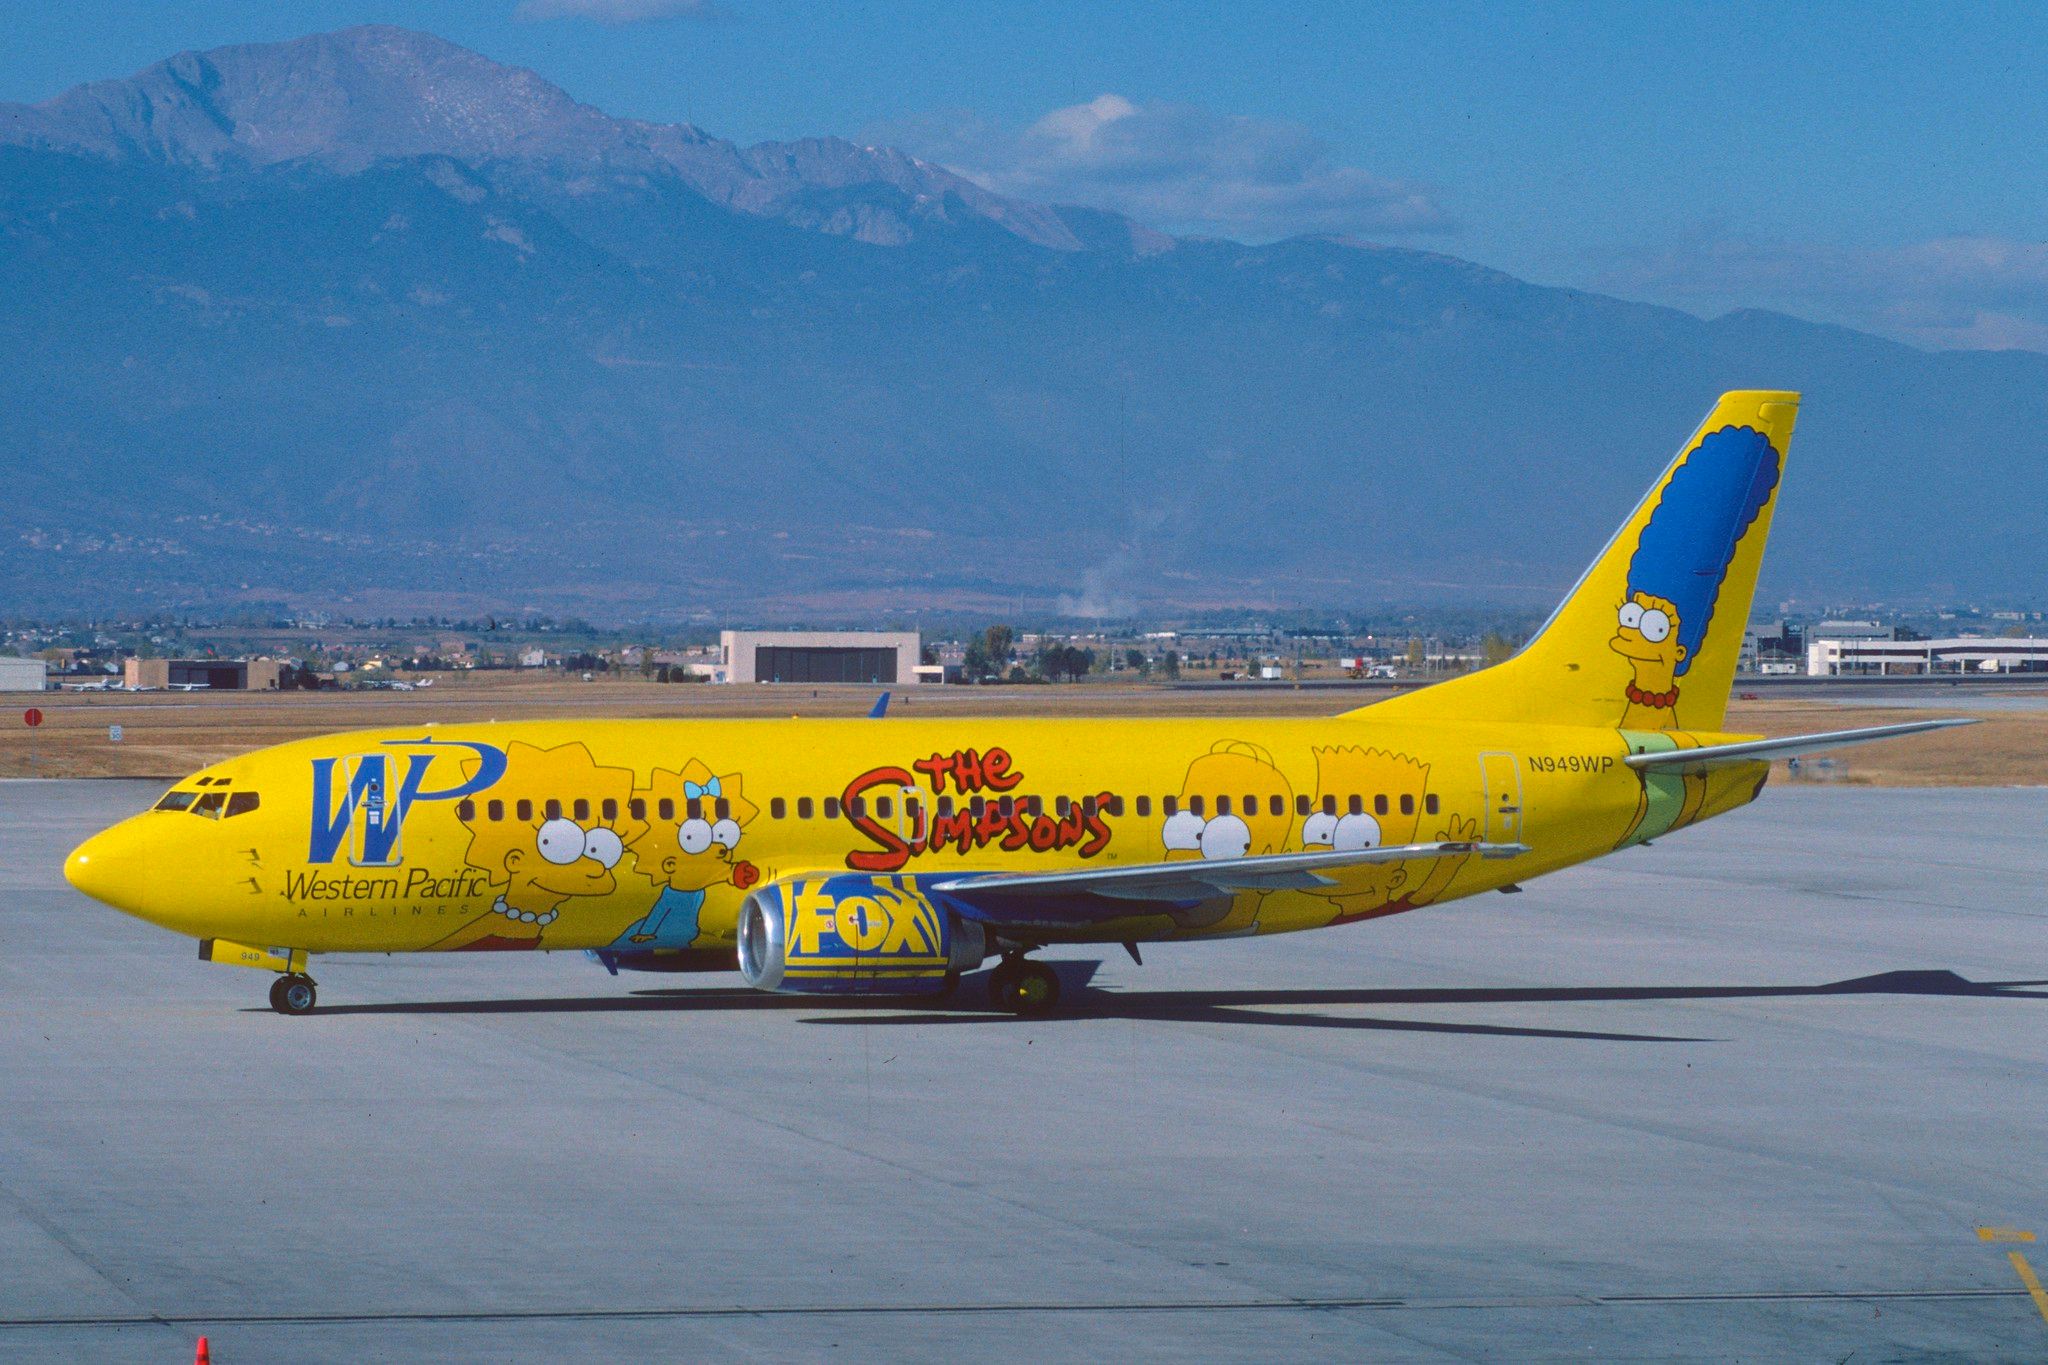 Western Pacific Boeing 737 Simpsons